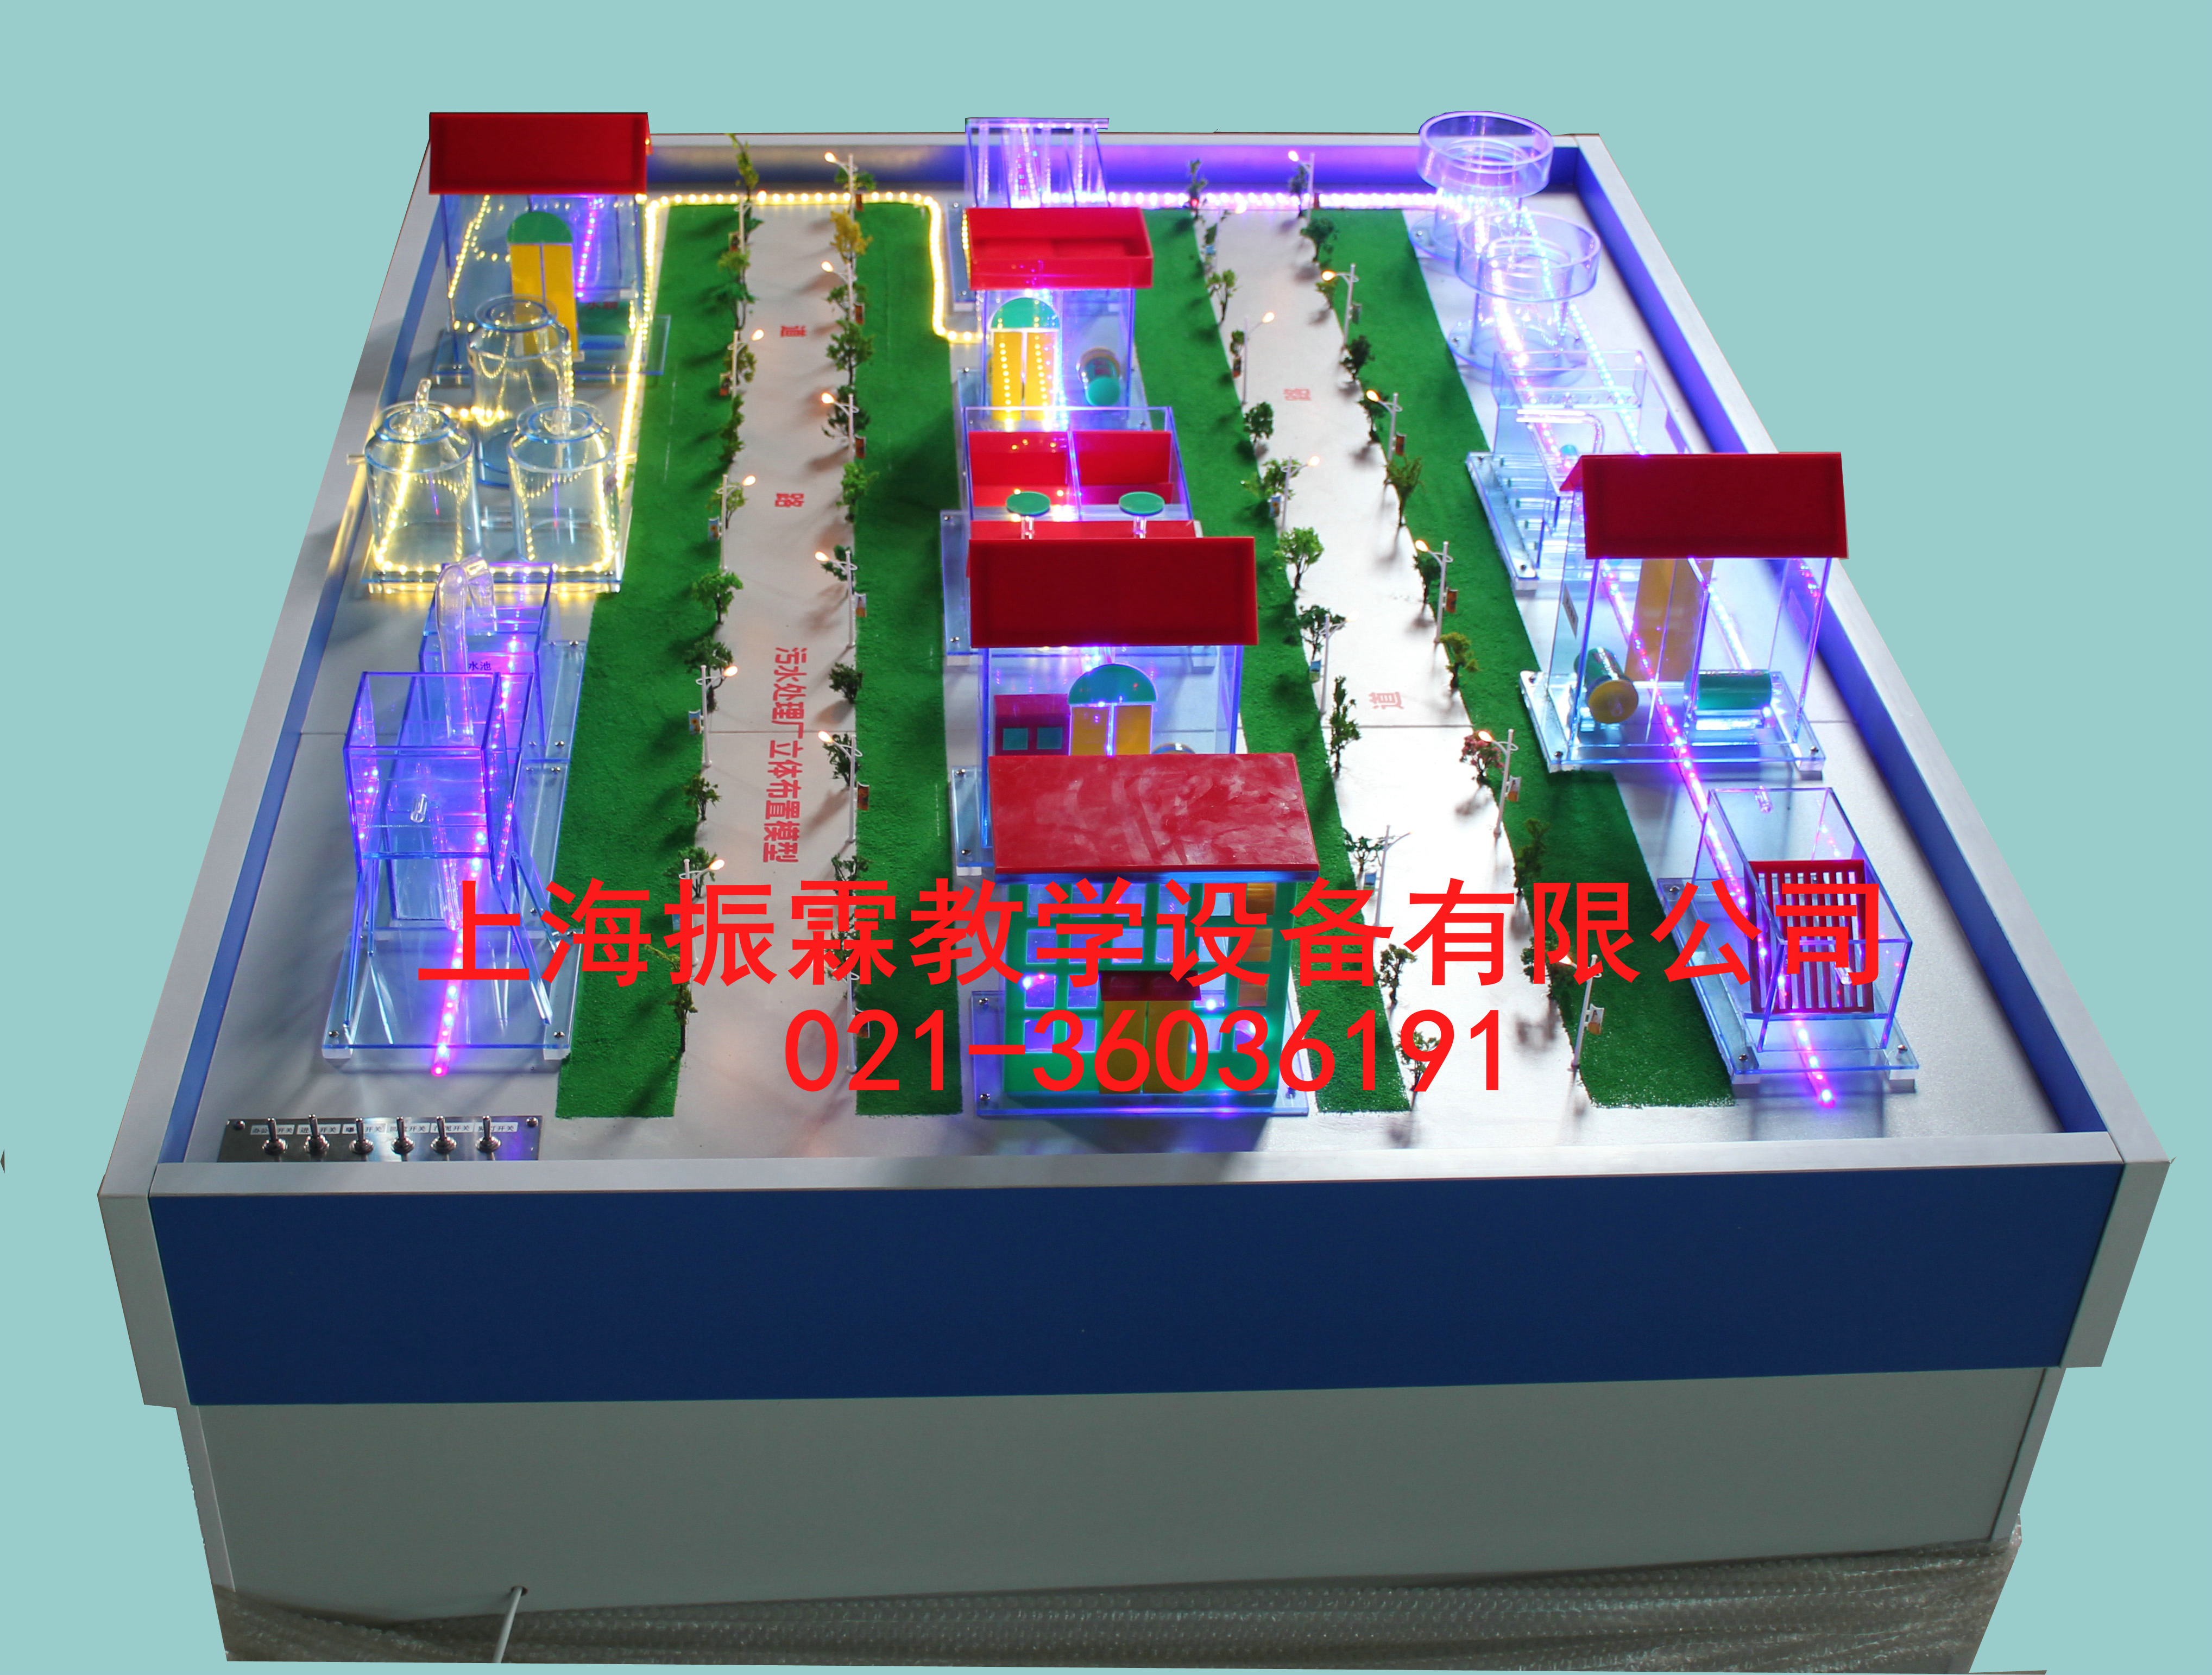 污水厂平面布置模型,污水厂平面布置模型装置,环境工程实验设备--上海振霖公司